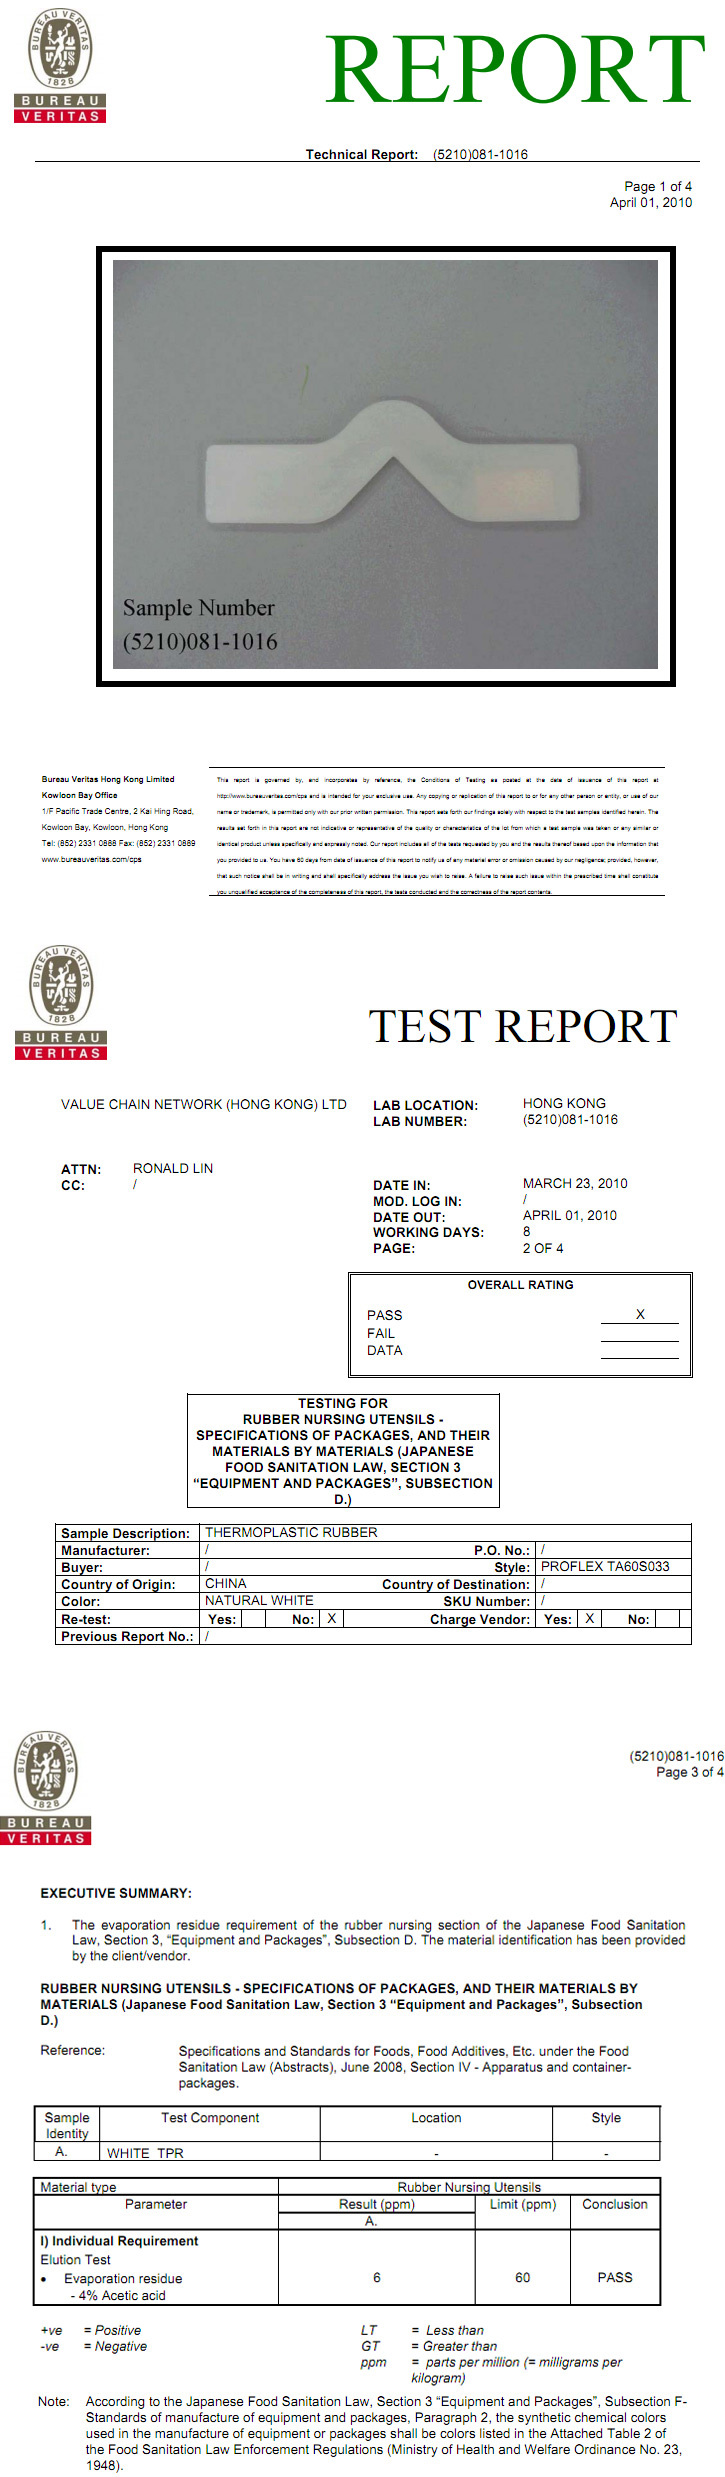 PROFLEX TA-S JAPAN FOOD TEST (4% Acetate) Test Report